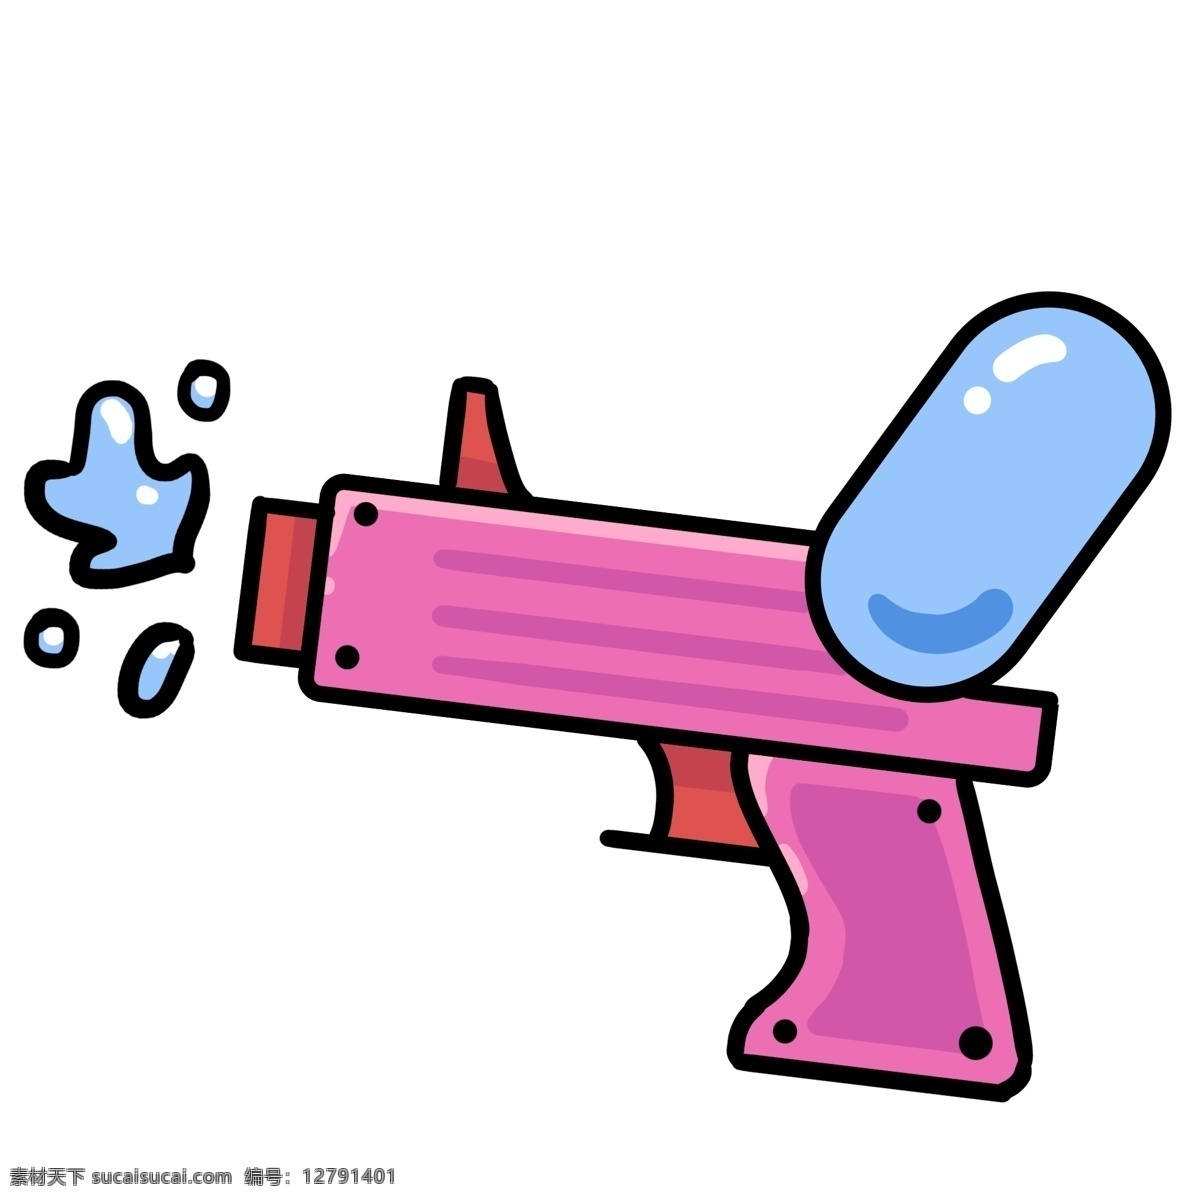 粉色 水枪 装饰 插画 粉色的水枪 漂亮的水枪 立体水枪 精美水枪 卡通水枪 水枪插画 玩具水枪